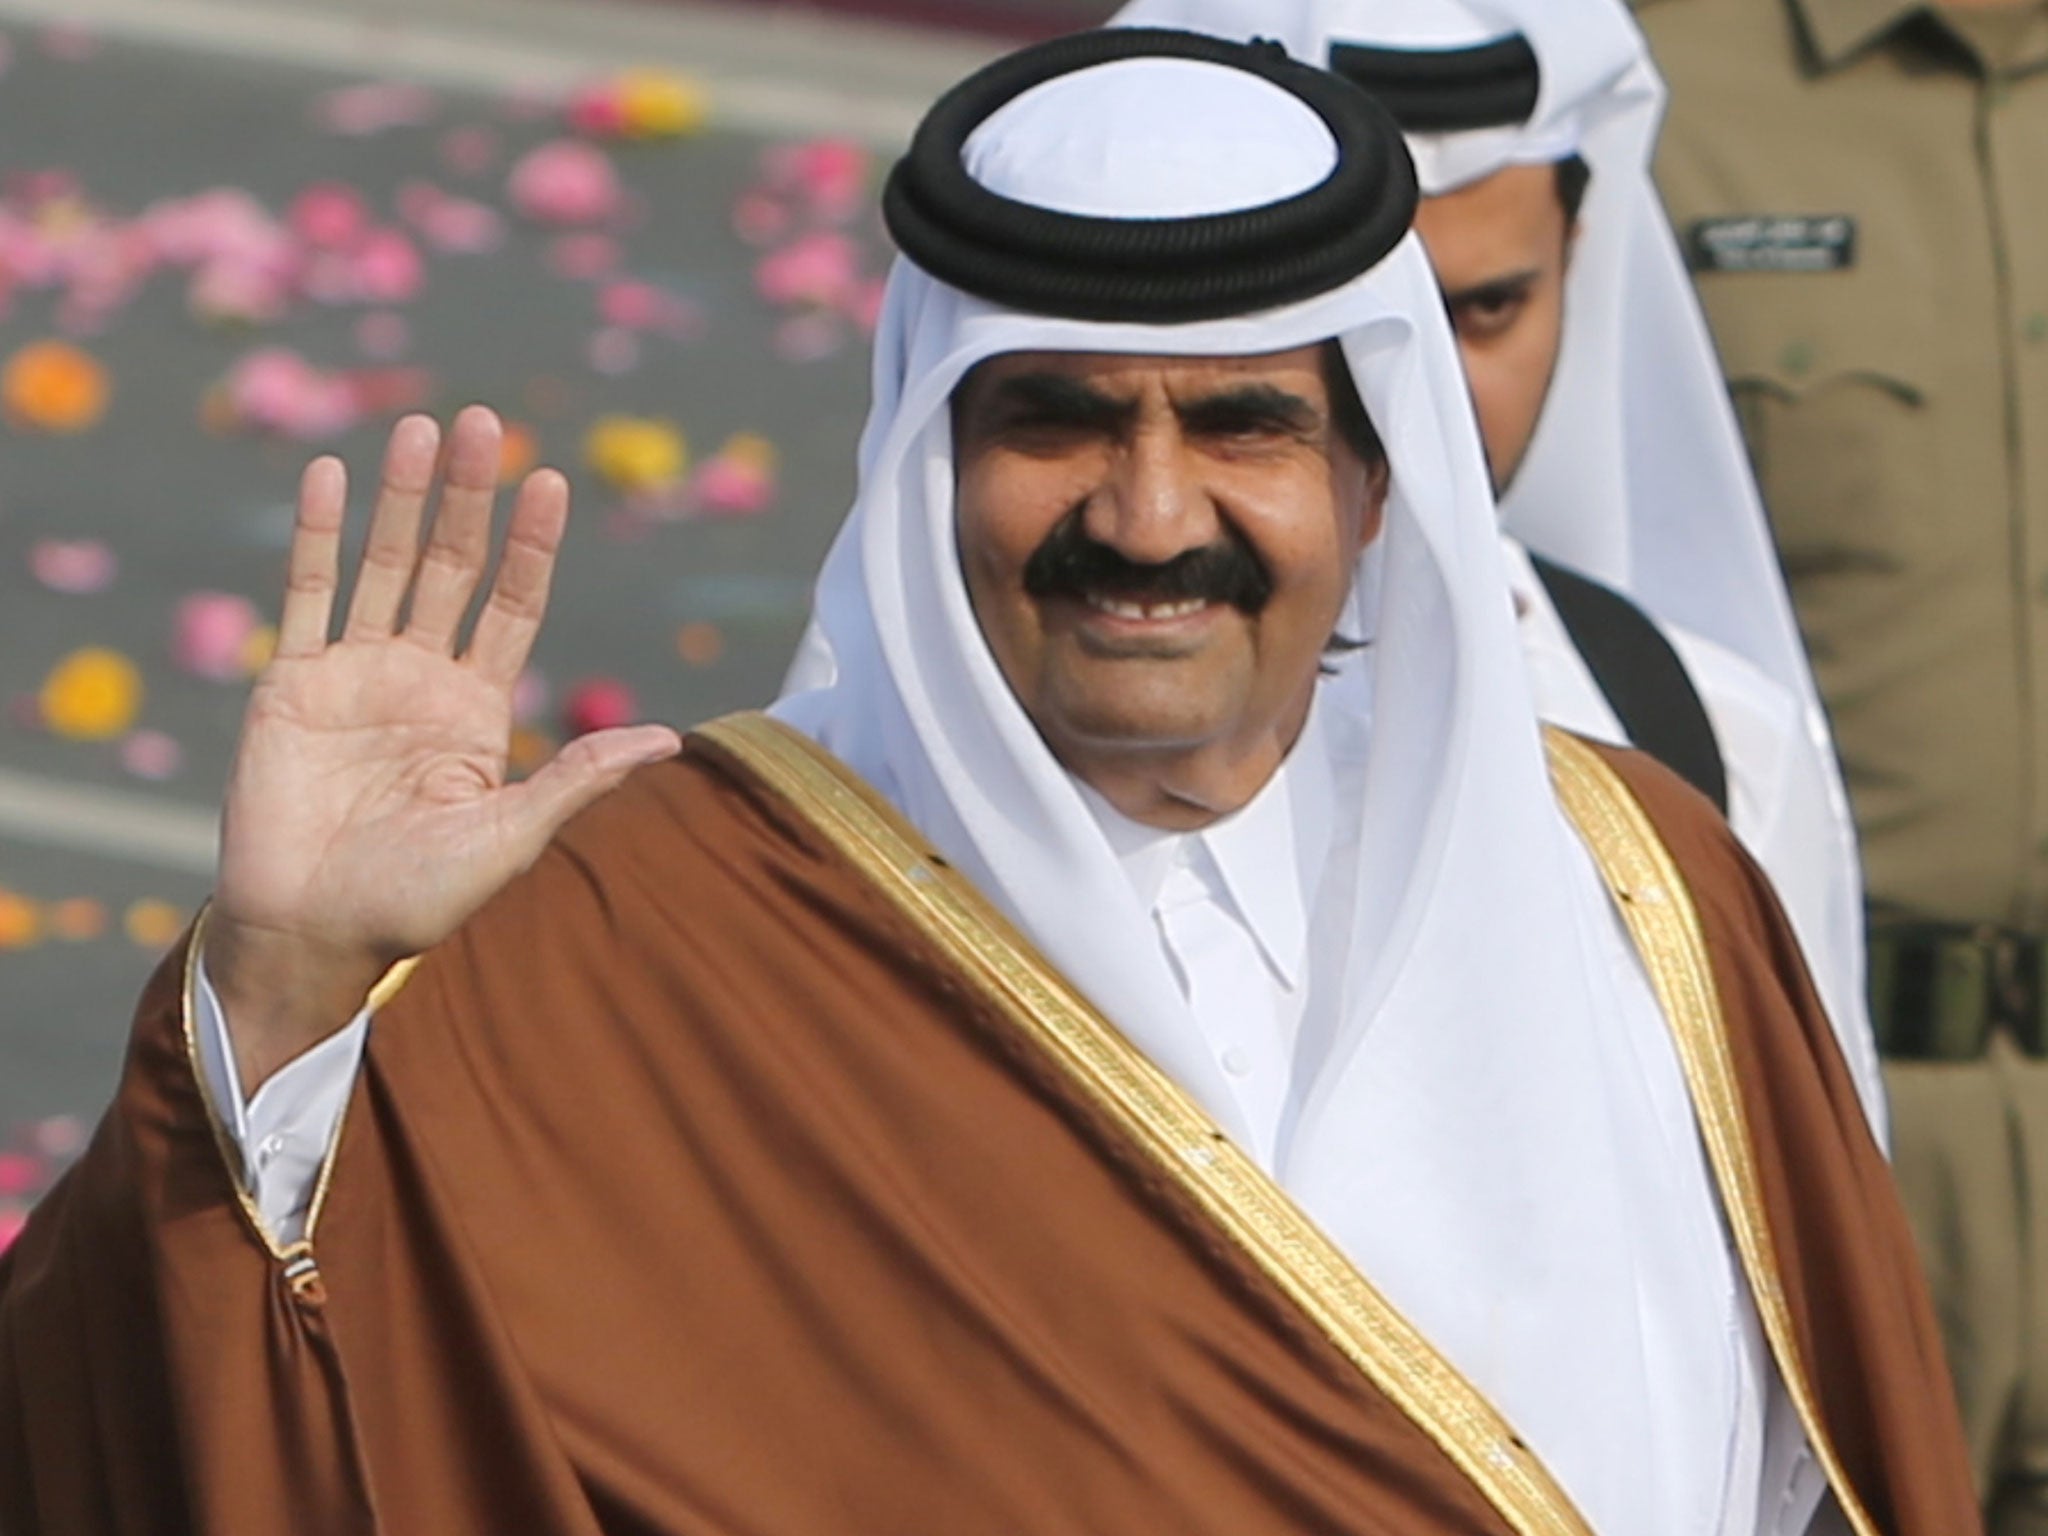 Qatari Royal Family Members